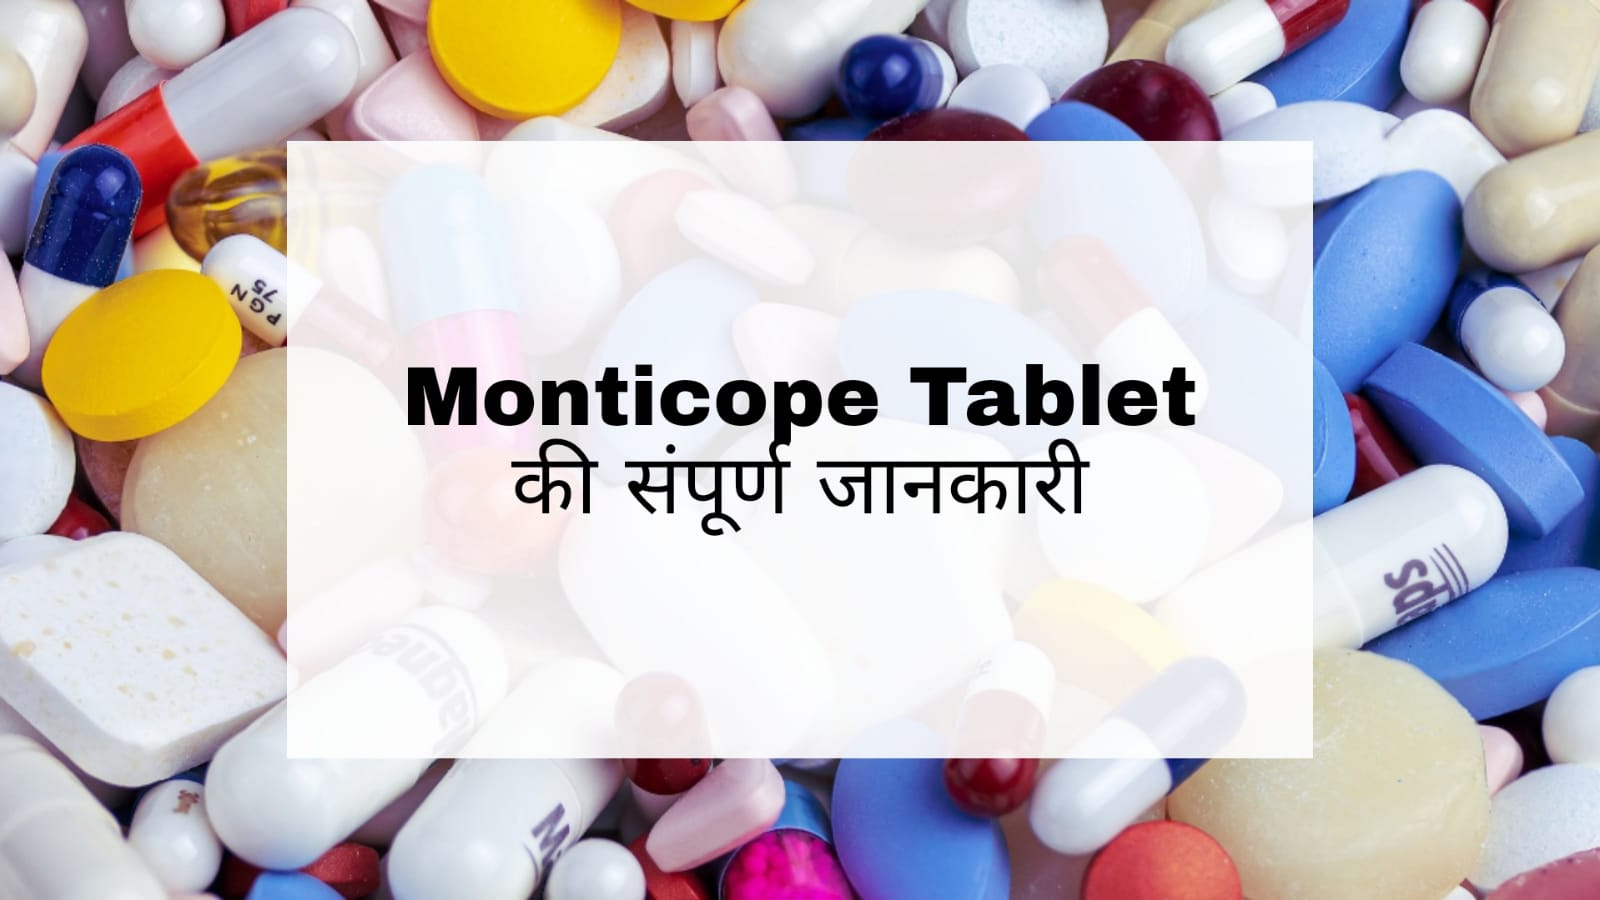 Monticope Tablet in Hindi: सर्दी, जुकाम, सांस लेने में समस्या